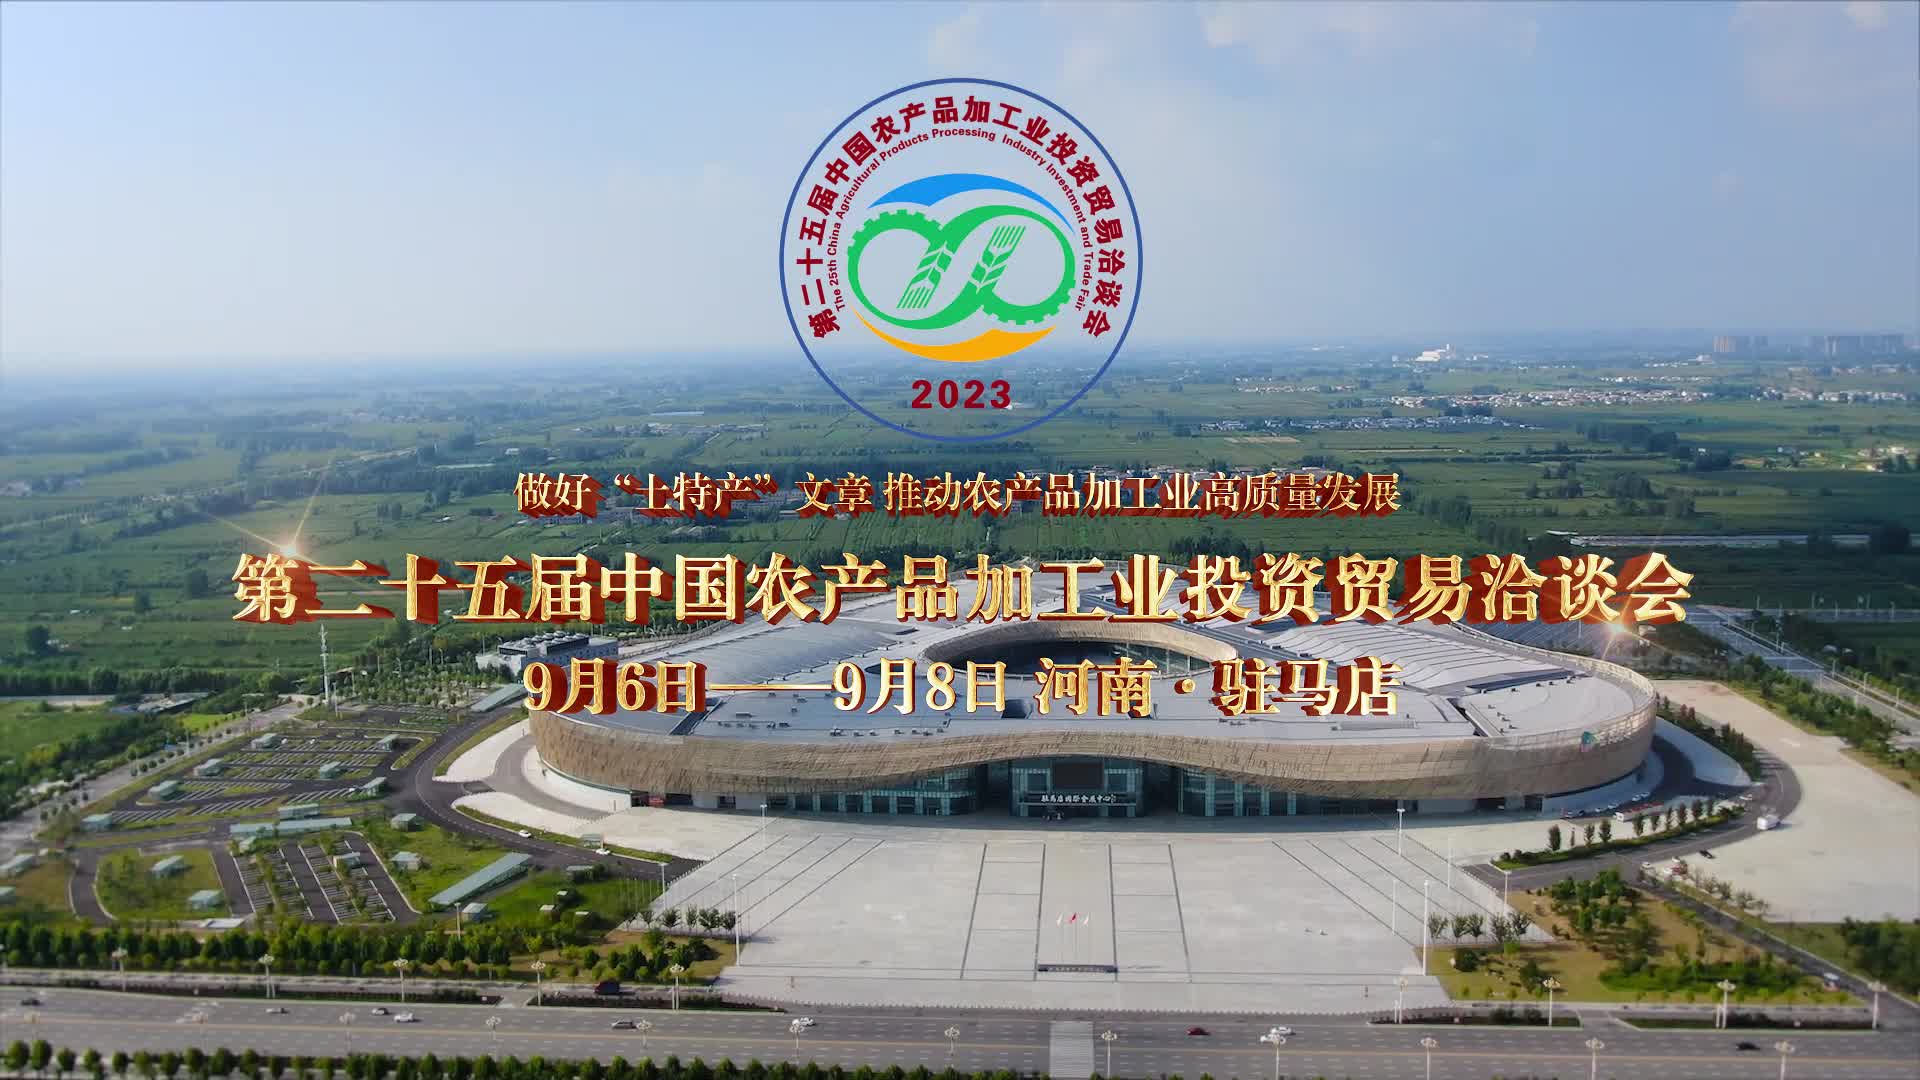 第二十五届中国农产品加工业投资贸易洽谈会——（9月6日——9月8日）相约河南·驻马店